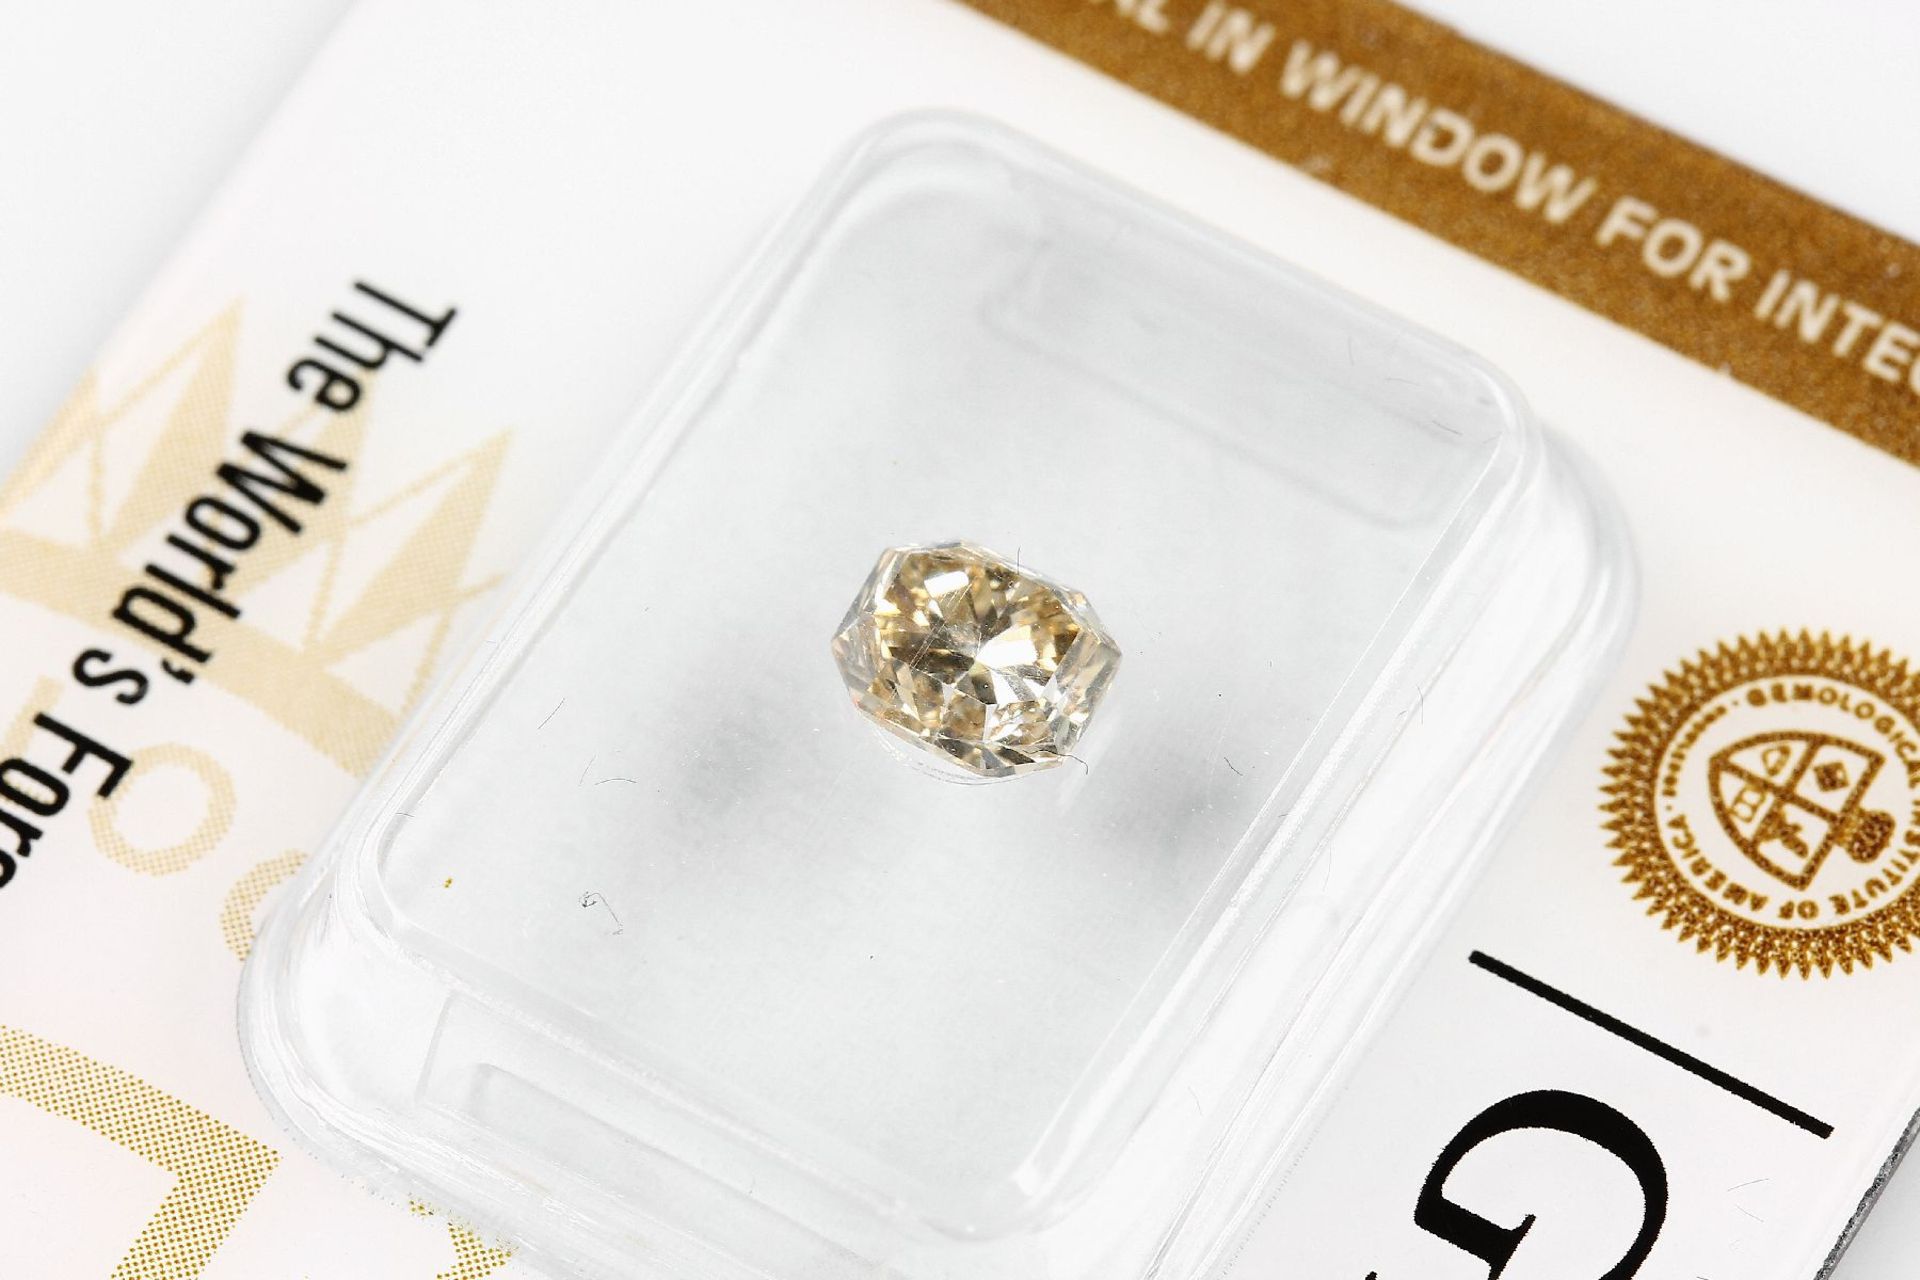 Loser Diamant, 0.77 ct Natural fancy yellow-brown, achteckig facett., 5.53 x 4.77 x 3.77 mm, - Bild 3 aus 4